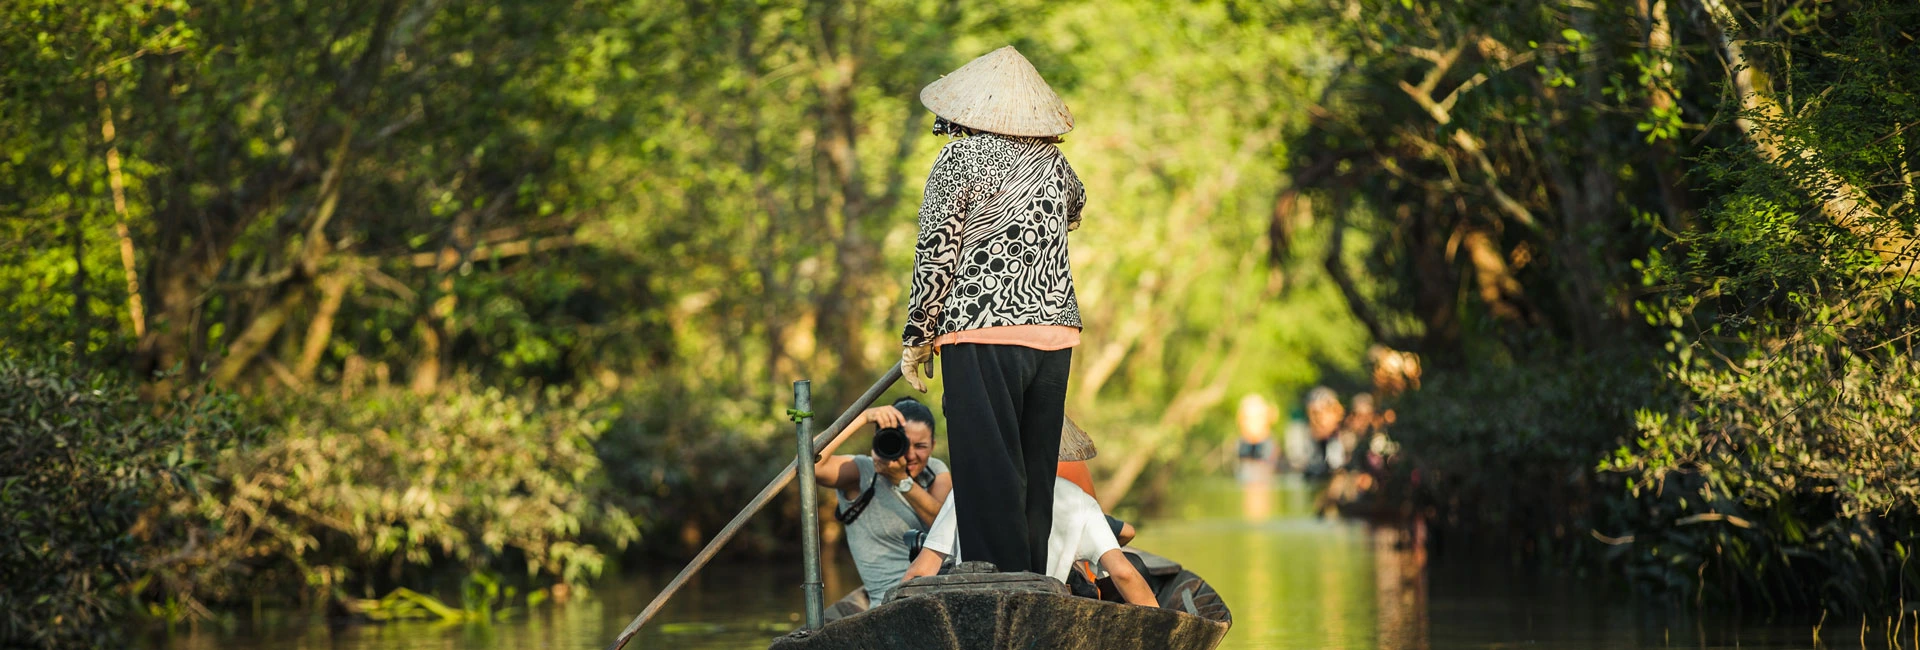 Best Mekong Delta Tours 3 Days